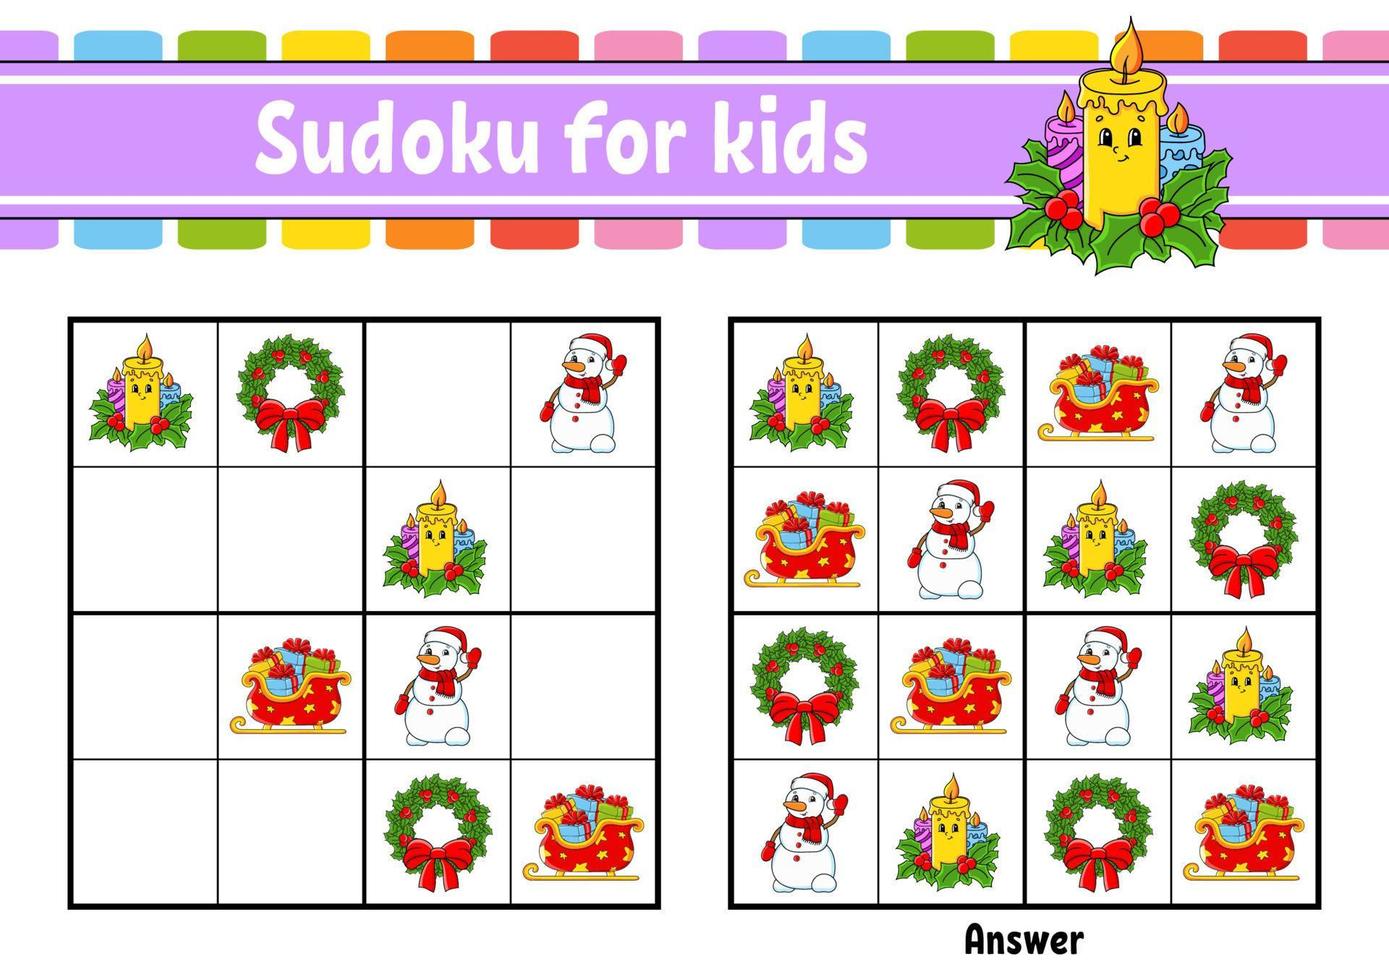 Sudoku für Kinder. arbeitsblatt zur bildungsentwicklung. Zeichentrickfigur. Aktivitätsseite in Farbe. Puzzlespiel für Kinder. Weihnachtsthema. isolierte Vektorillustration. vektor